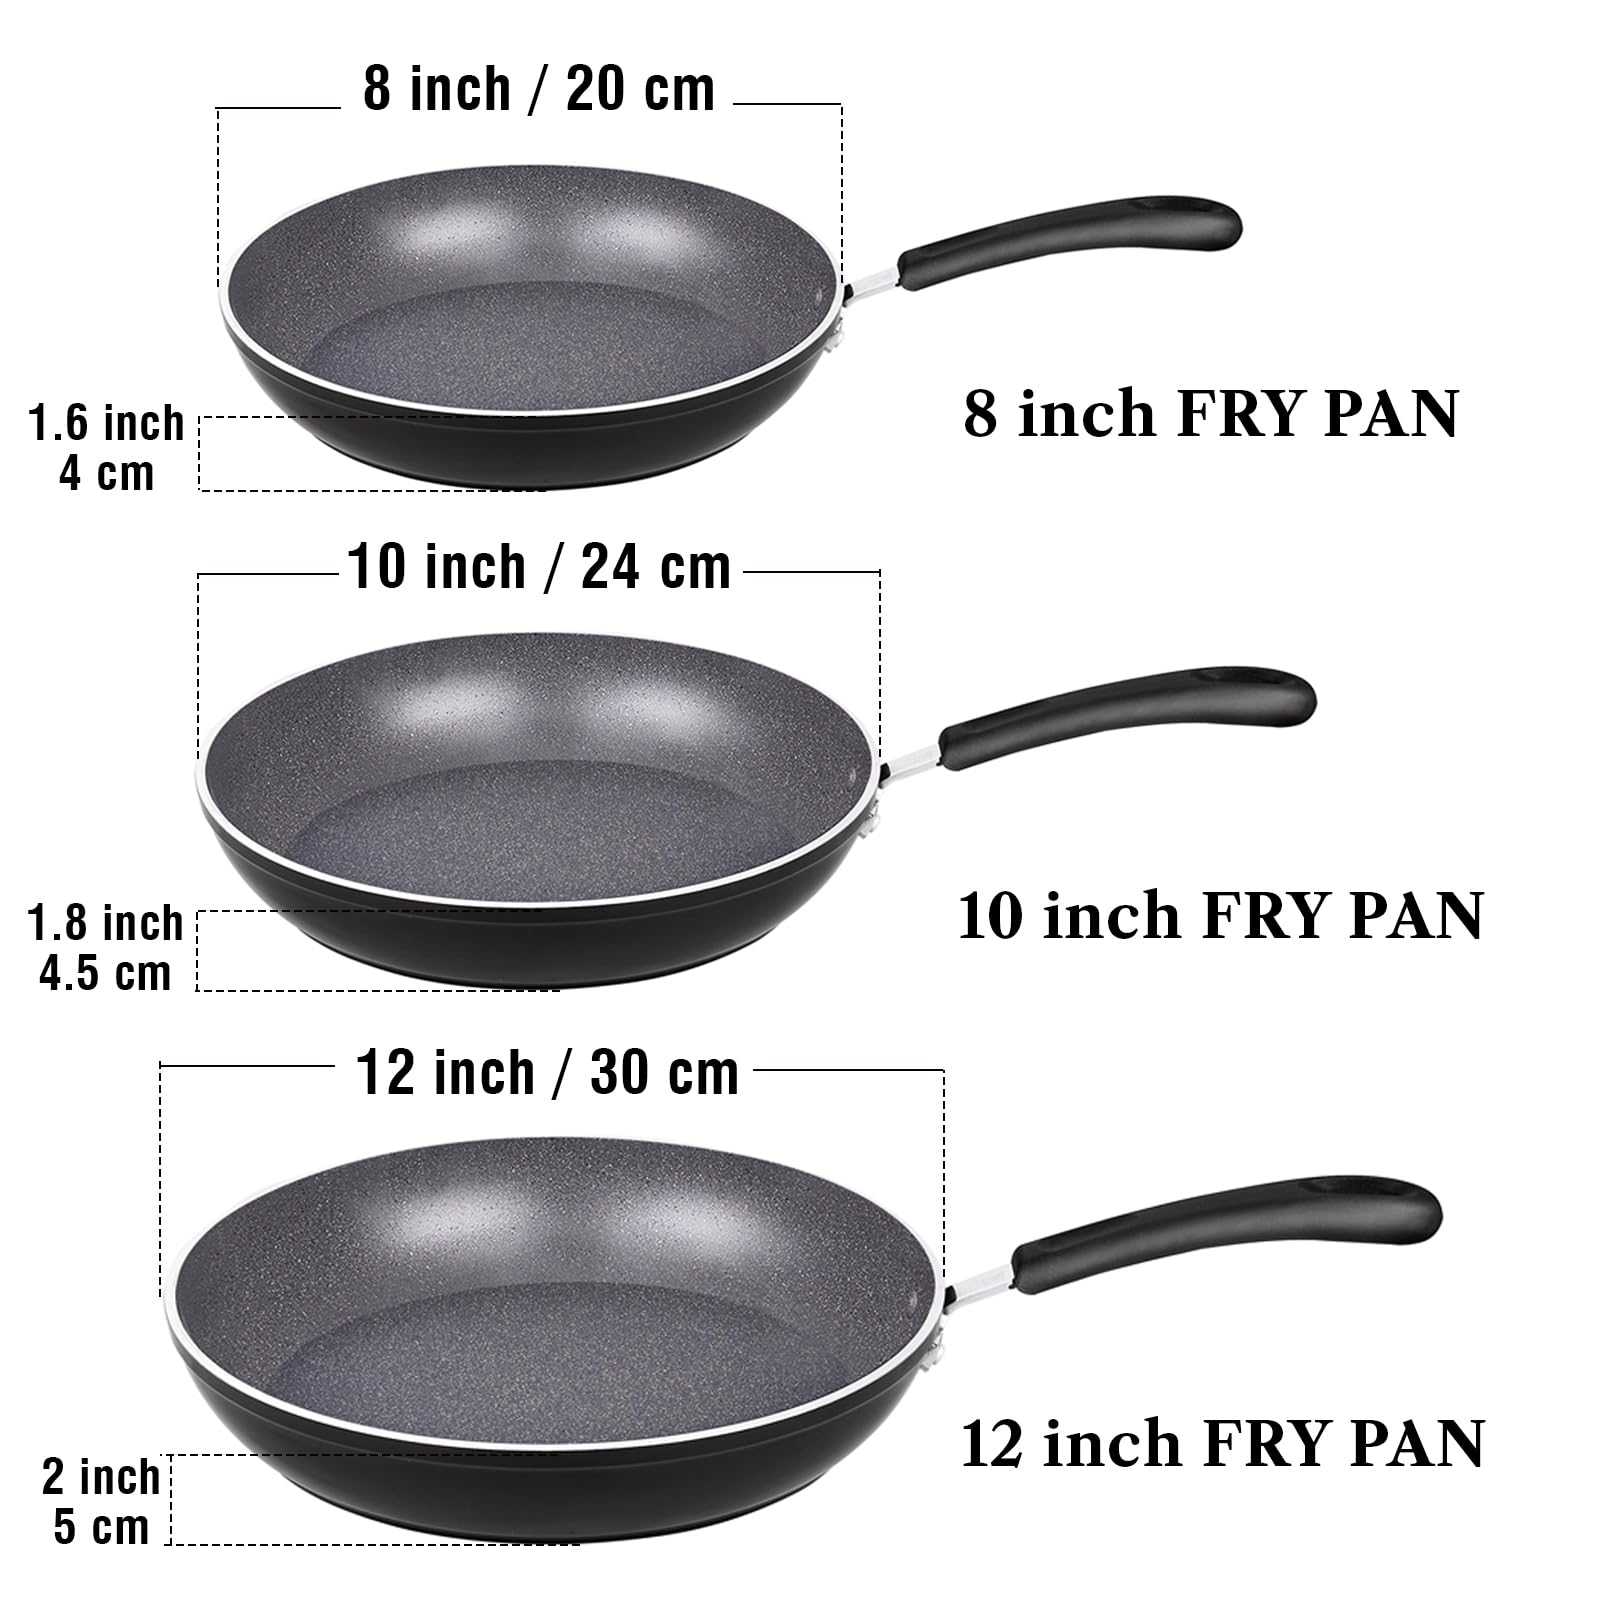 10 & 12 Frying Pan Set